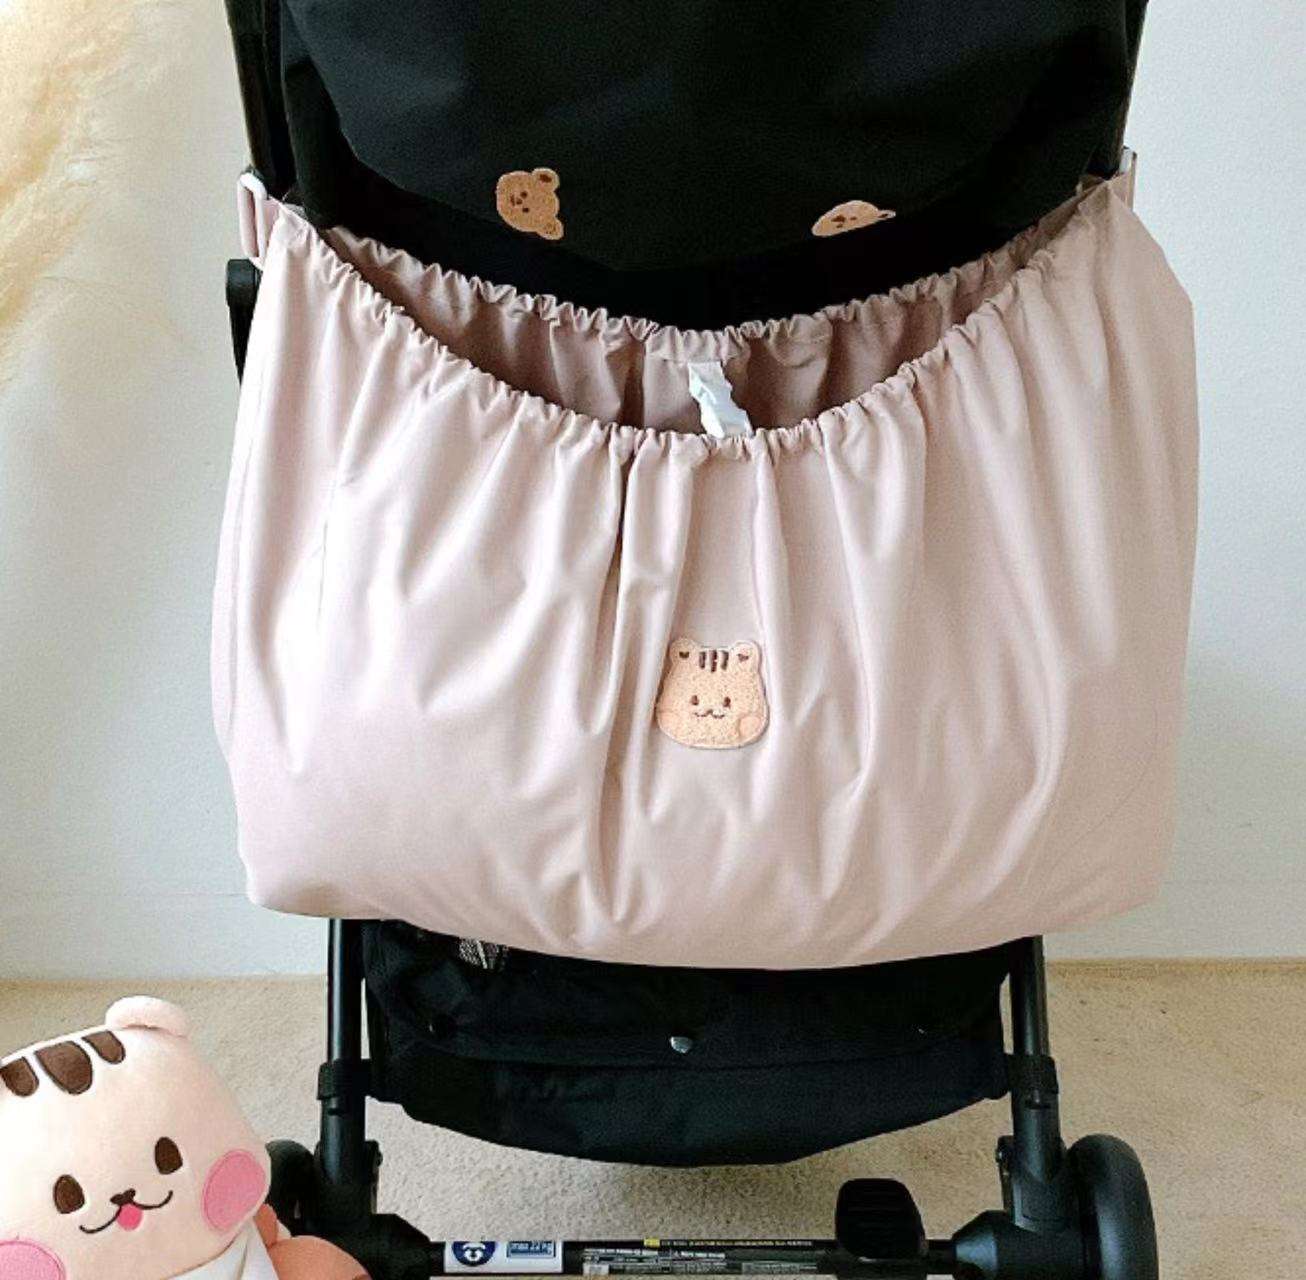 Bolsa colgante de gran tamaño de Corea para mamá, bolsa organizadora de pañales para cochecito de bebé, bolsa de almacenamiento para cochecito de bebé al aire libre